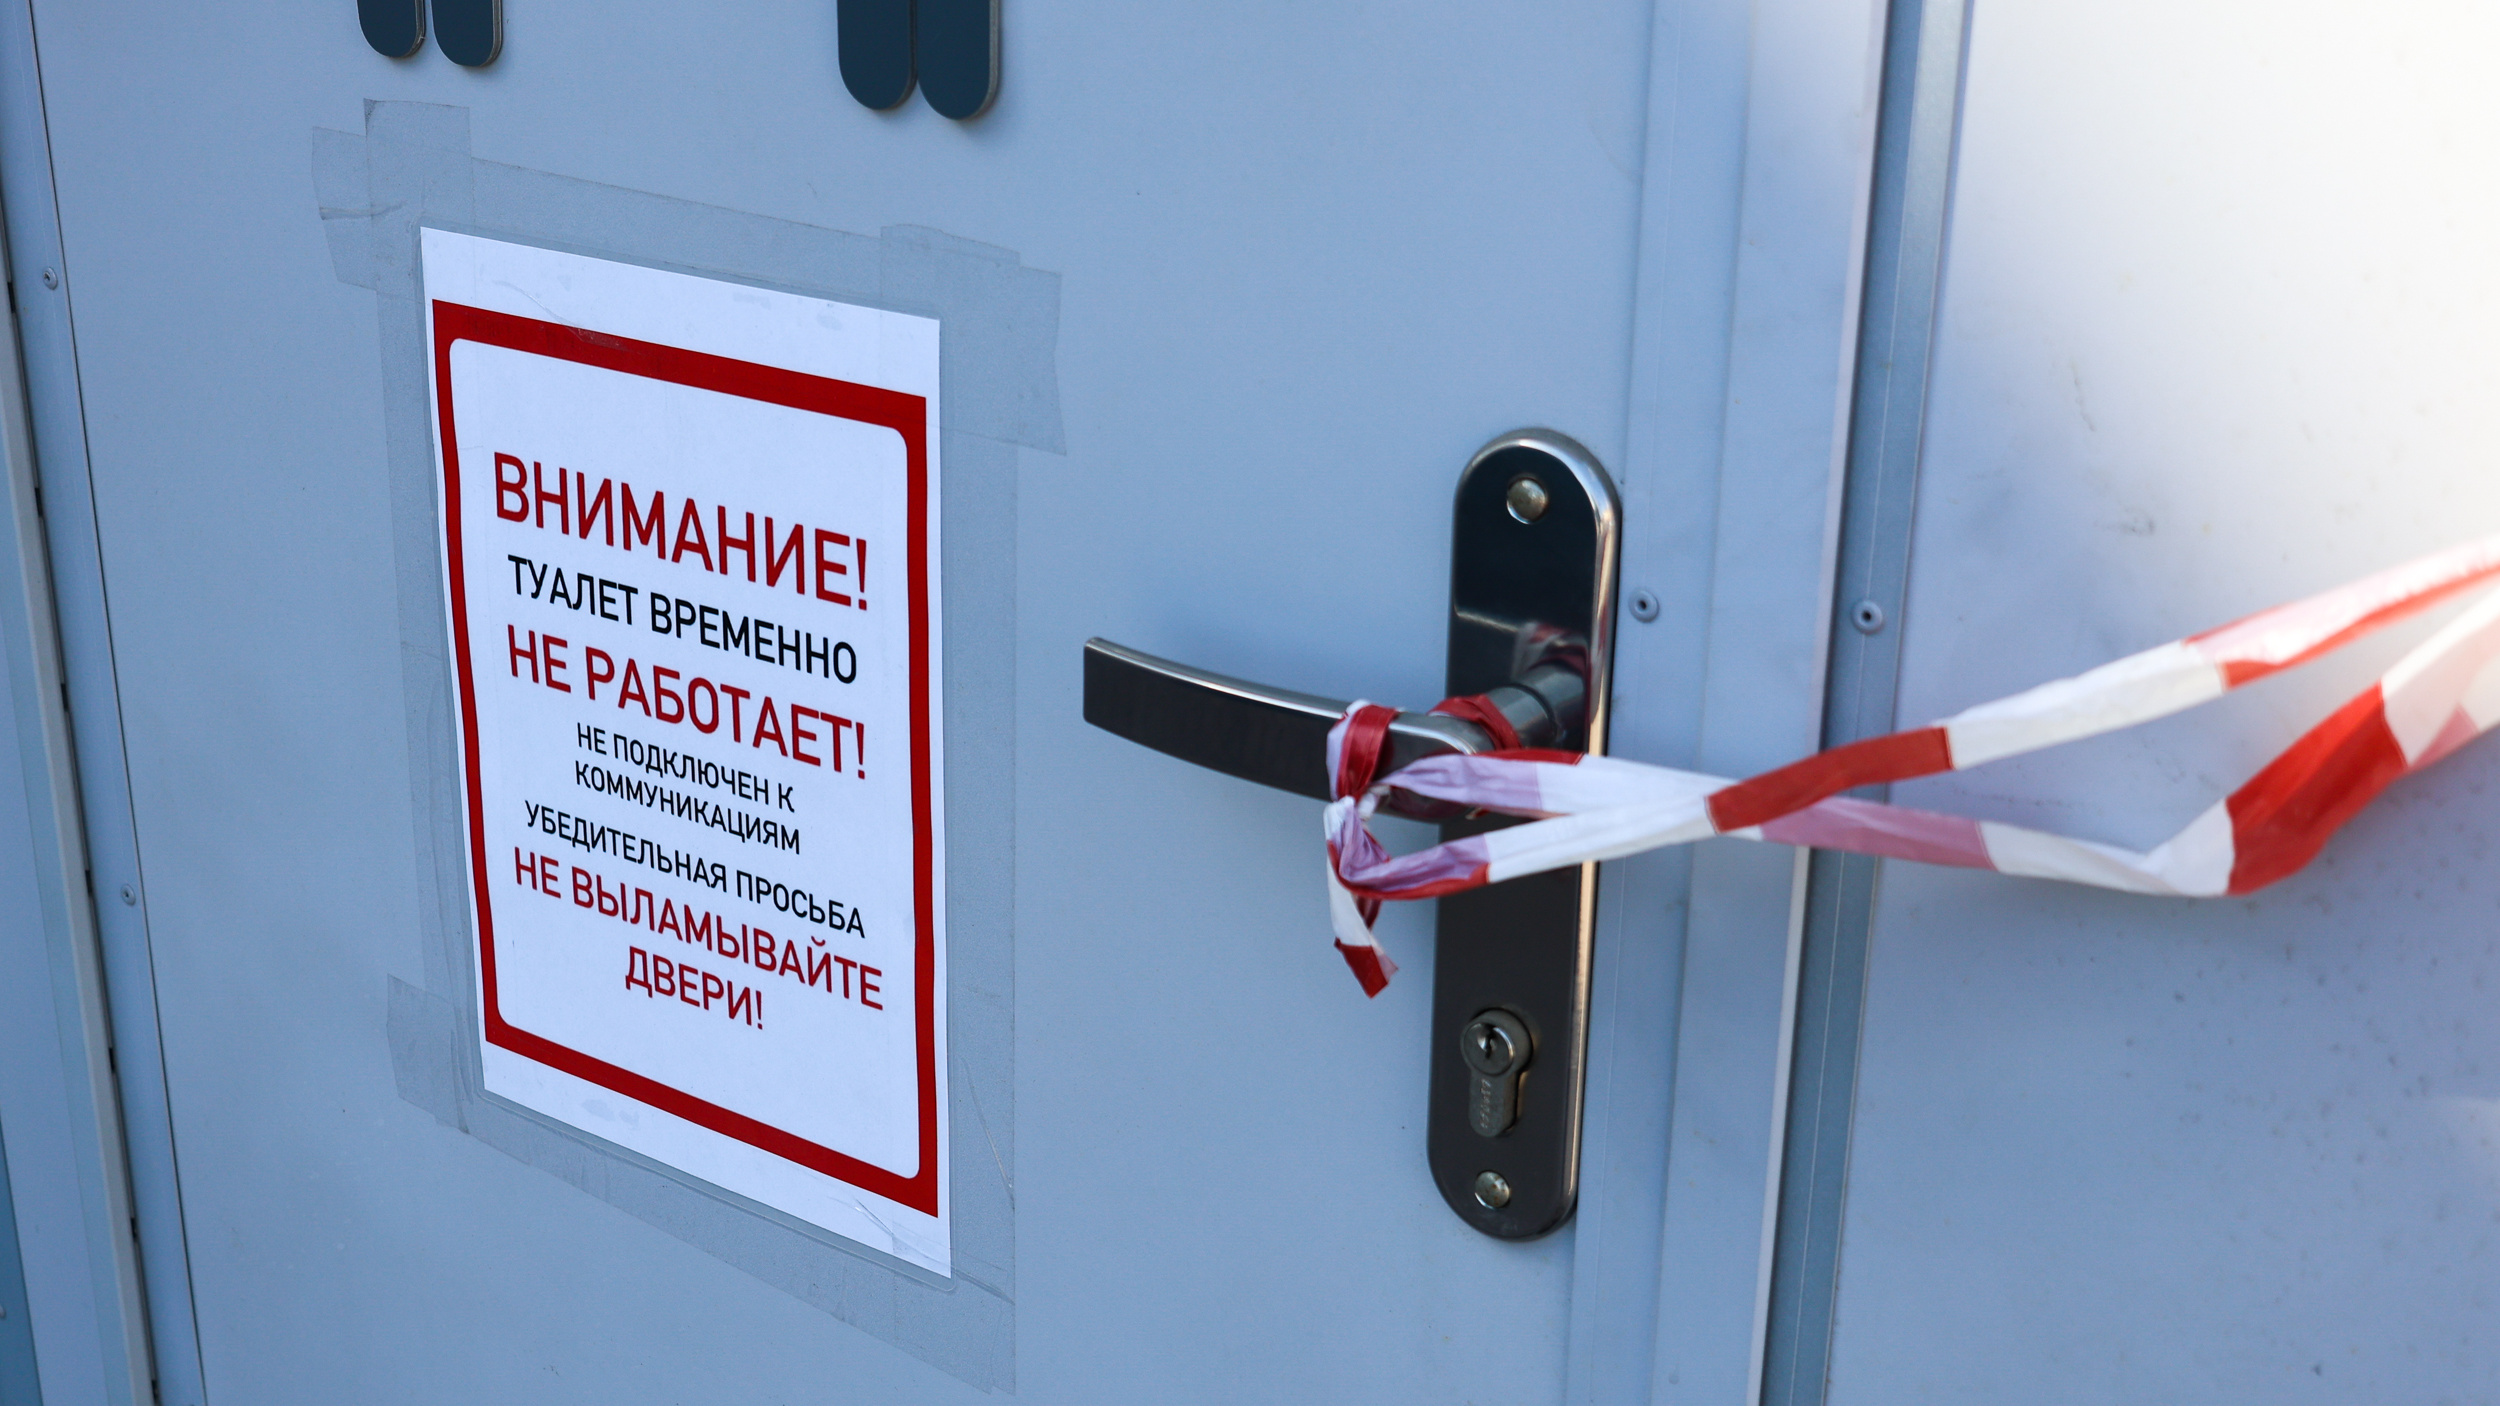 Не выламывайте двери и терпите! В Иркутске не запустили туалеты, поставленные на федеральный грант по туризму